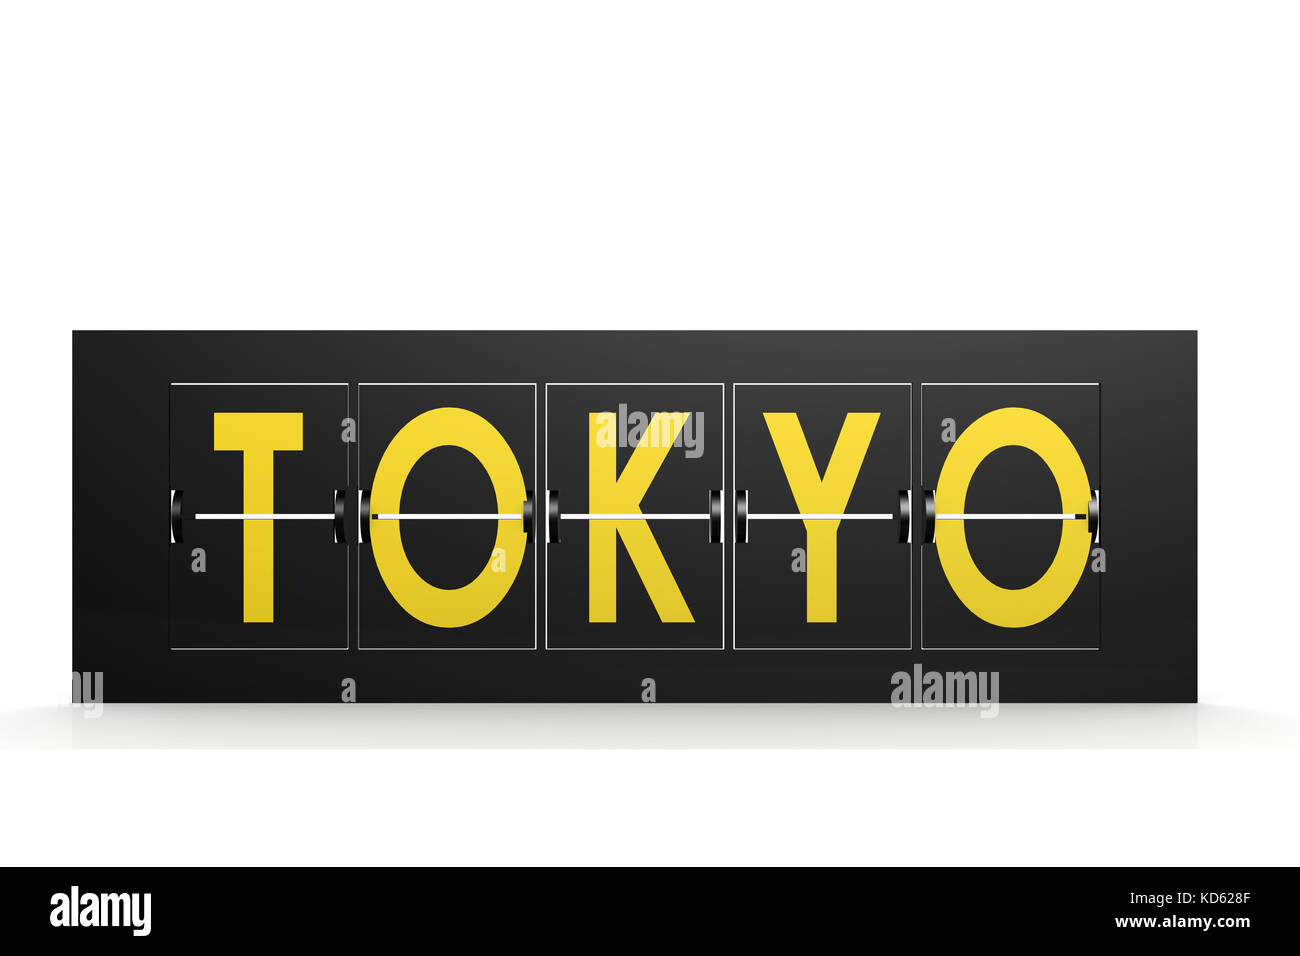 Tokio Wort auf Flughafen zeichen Bild mit Hi-res gerenderte Grafiken, die für jede beliebige Grafik Design verwendet werden könnten. Stockfoto